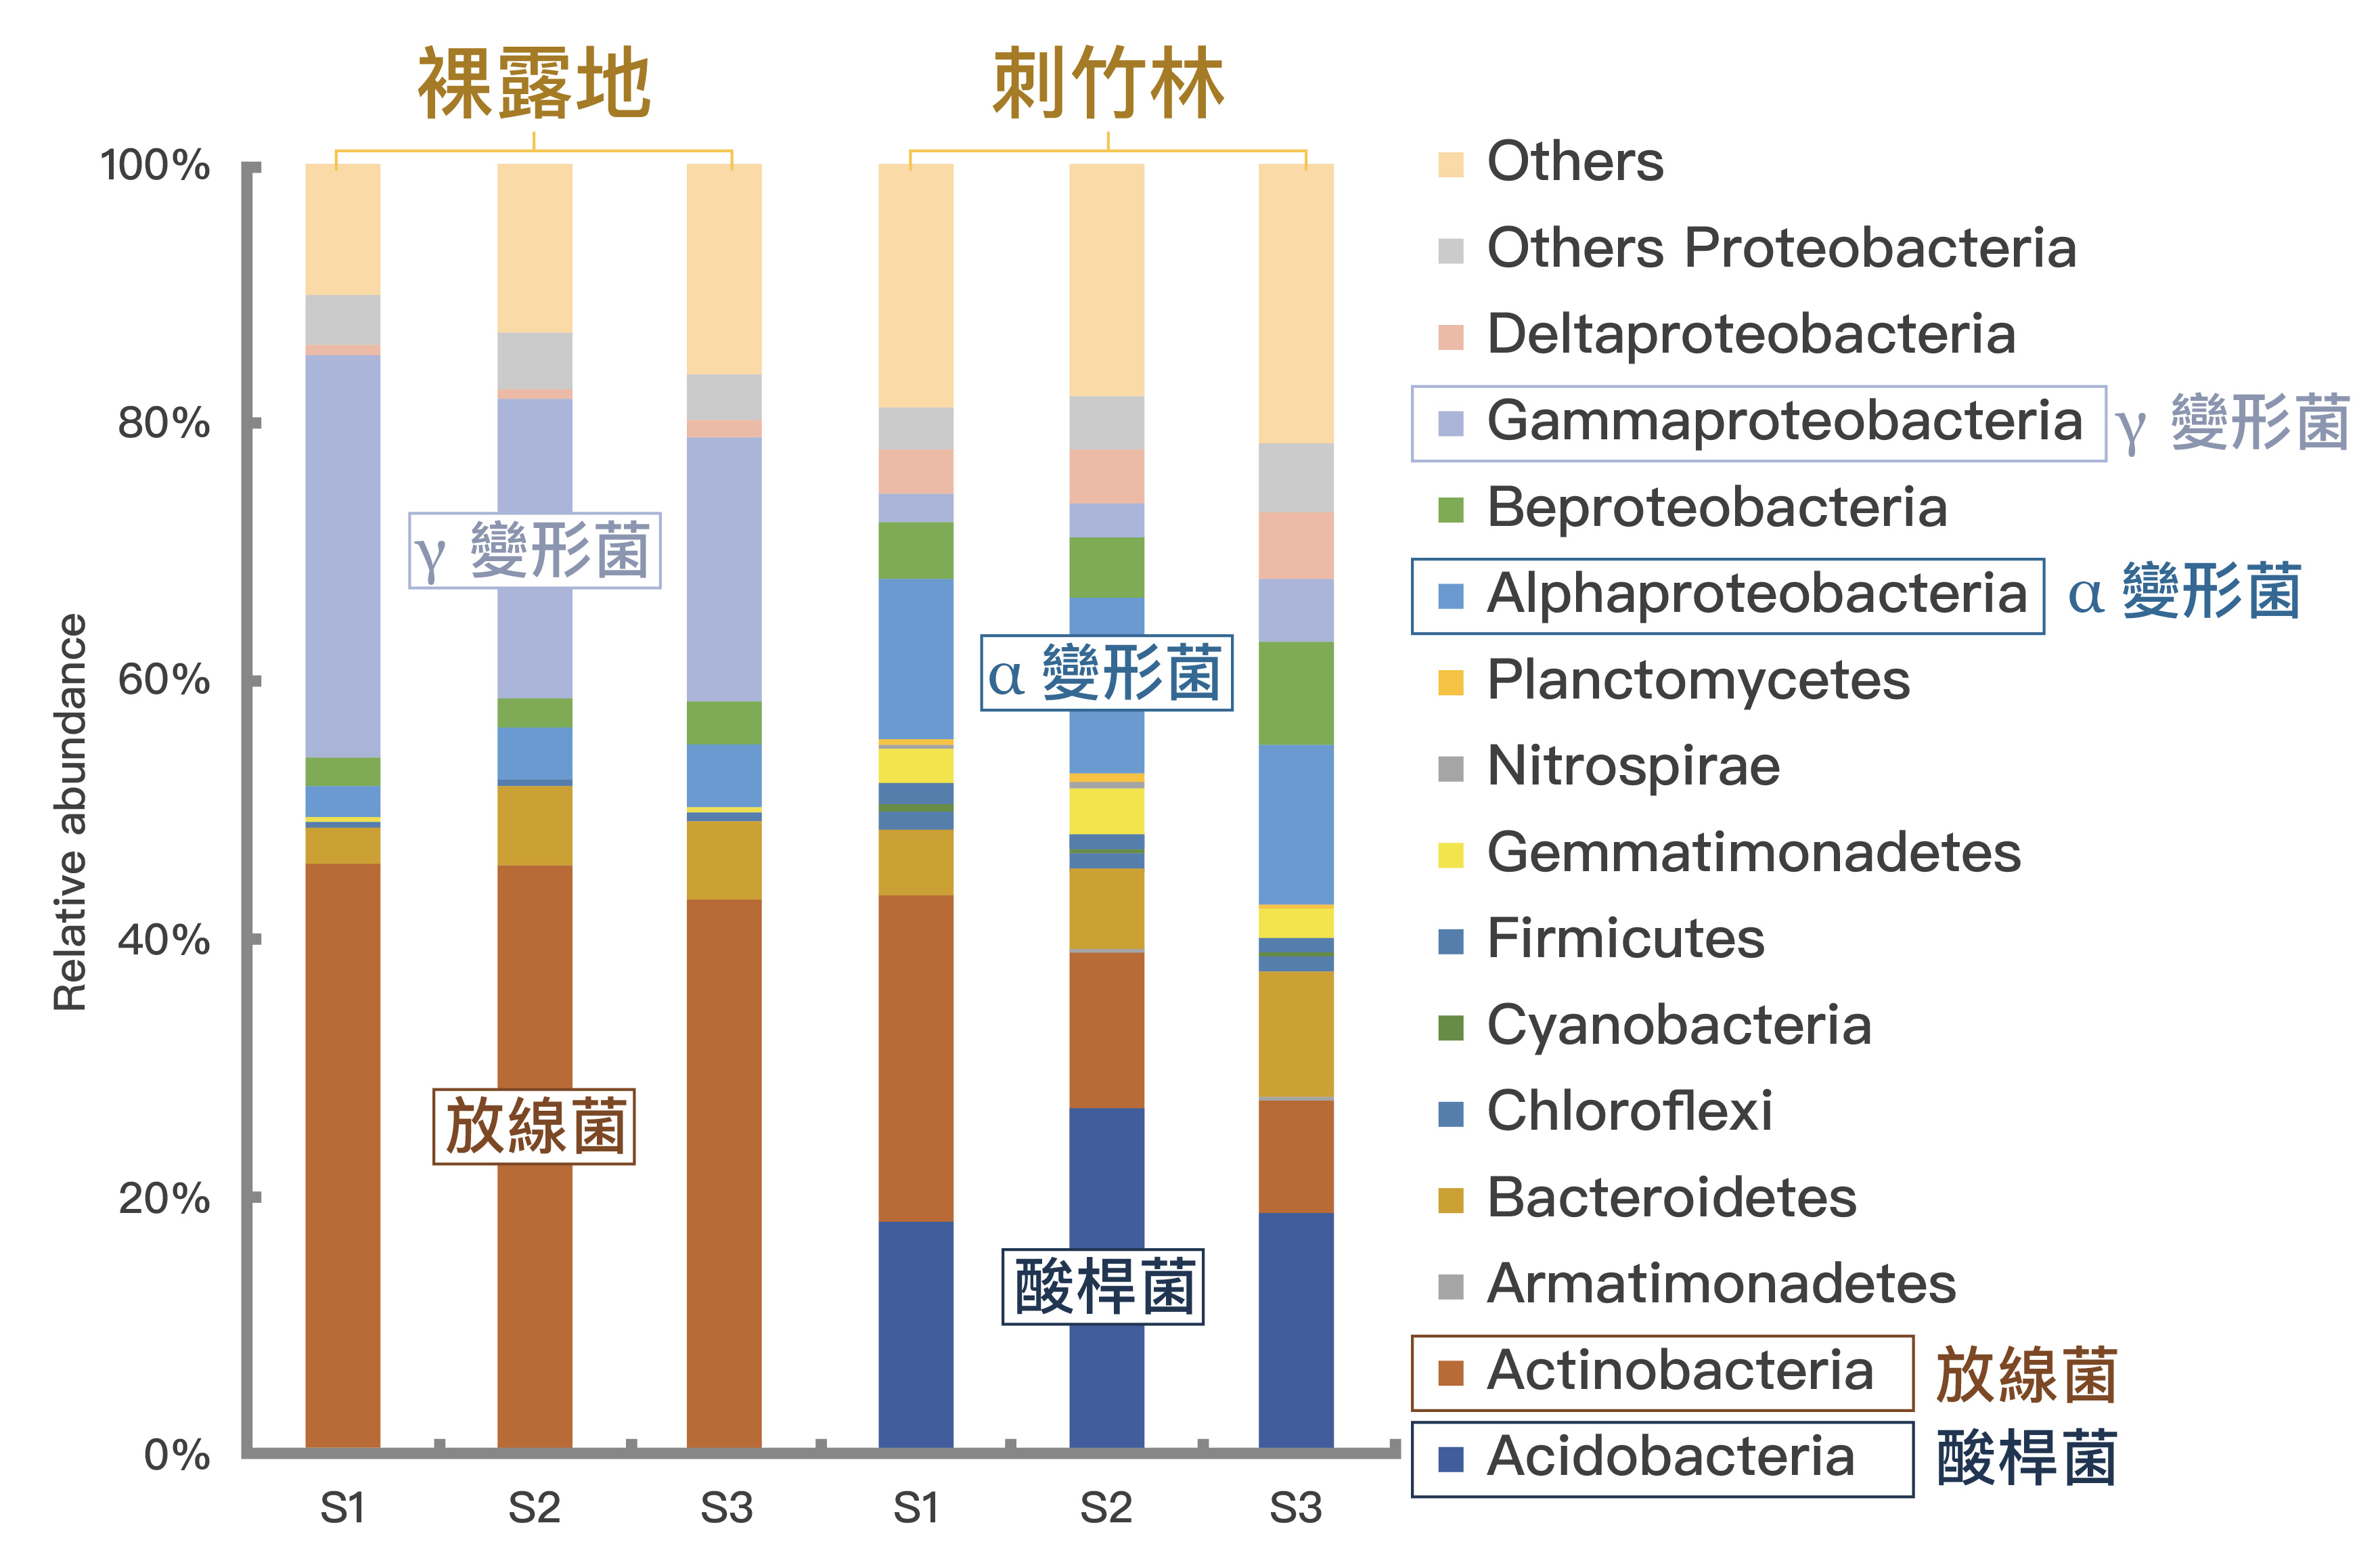 DNA å®åºåæï¼æä¸çæ¡å°çãè£¸é²å°ãåãåºç«¹æãåå£¤éç´°èæç¾¤çå·®ç°ã è³æä¾æºâLin, Y.T. Whtman, W.B., Coleman, D.C., Shiau, Y.J., Jien, S.H. and Chiu, C.Y.*, 2018, âThe influences of thorny bamboo growth on the bacterial community in badland soils of southwestern Taiwanâ, Land Degradation & Development, 29(8), 2728-2738. åèªªéè£½âå»è±å±ãå¼µèªè¾°